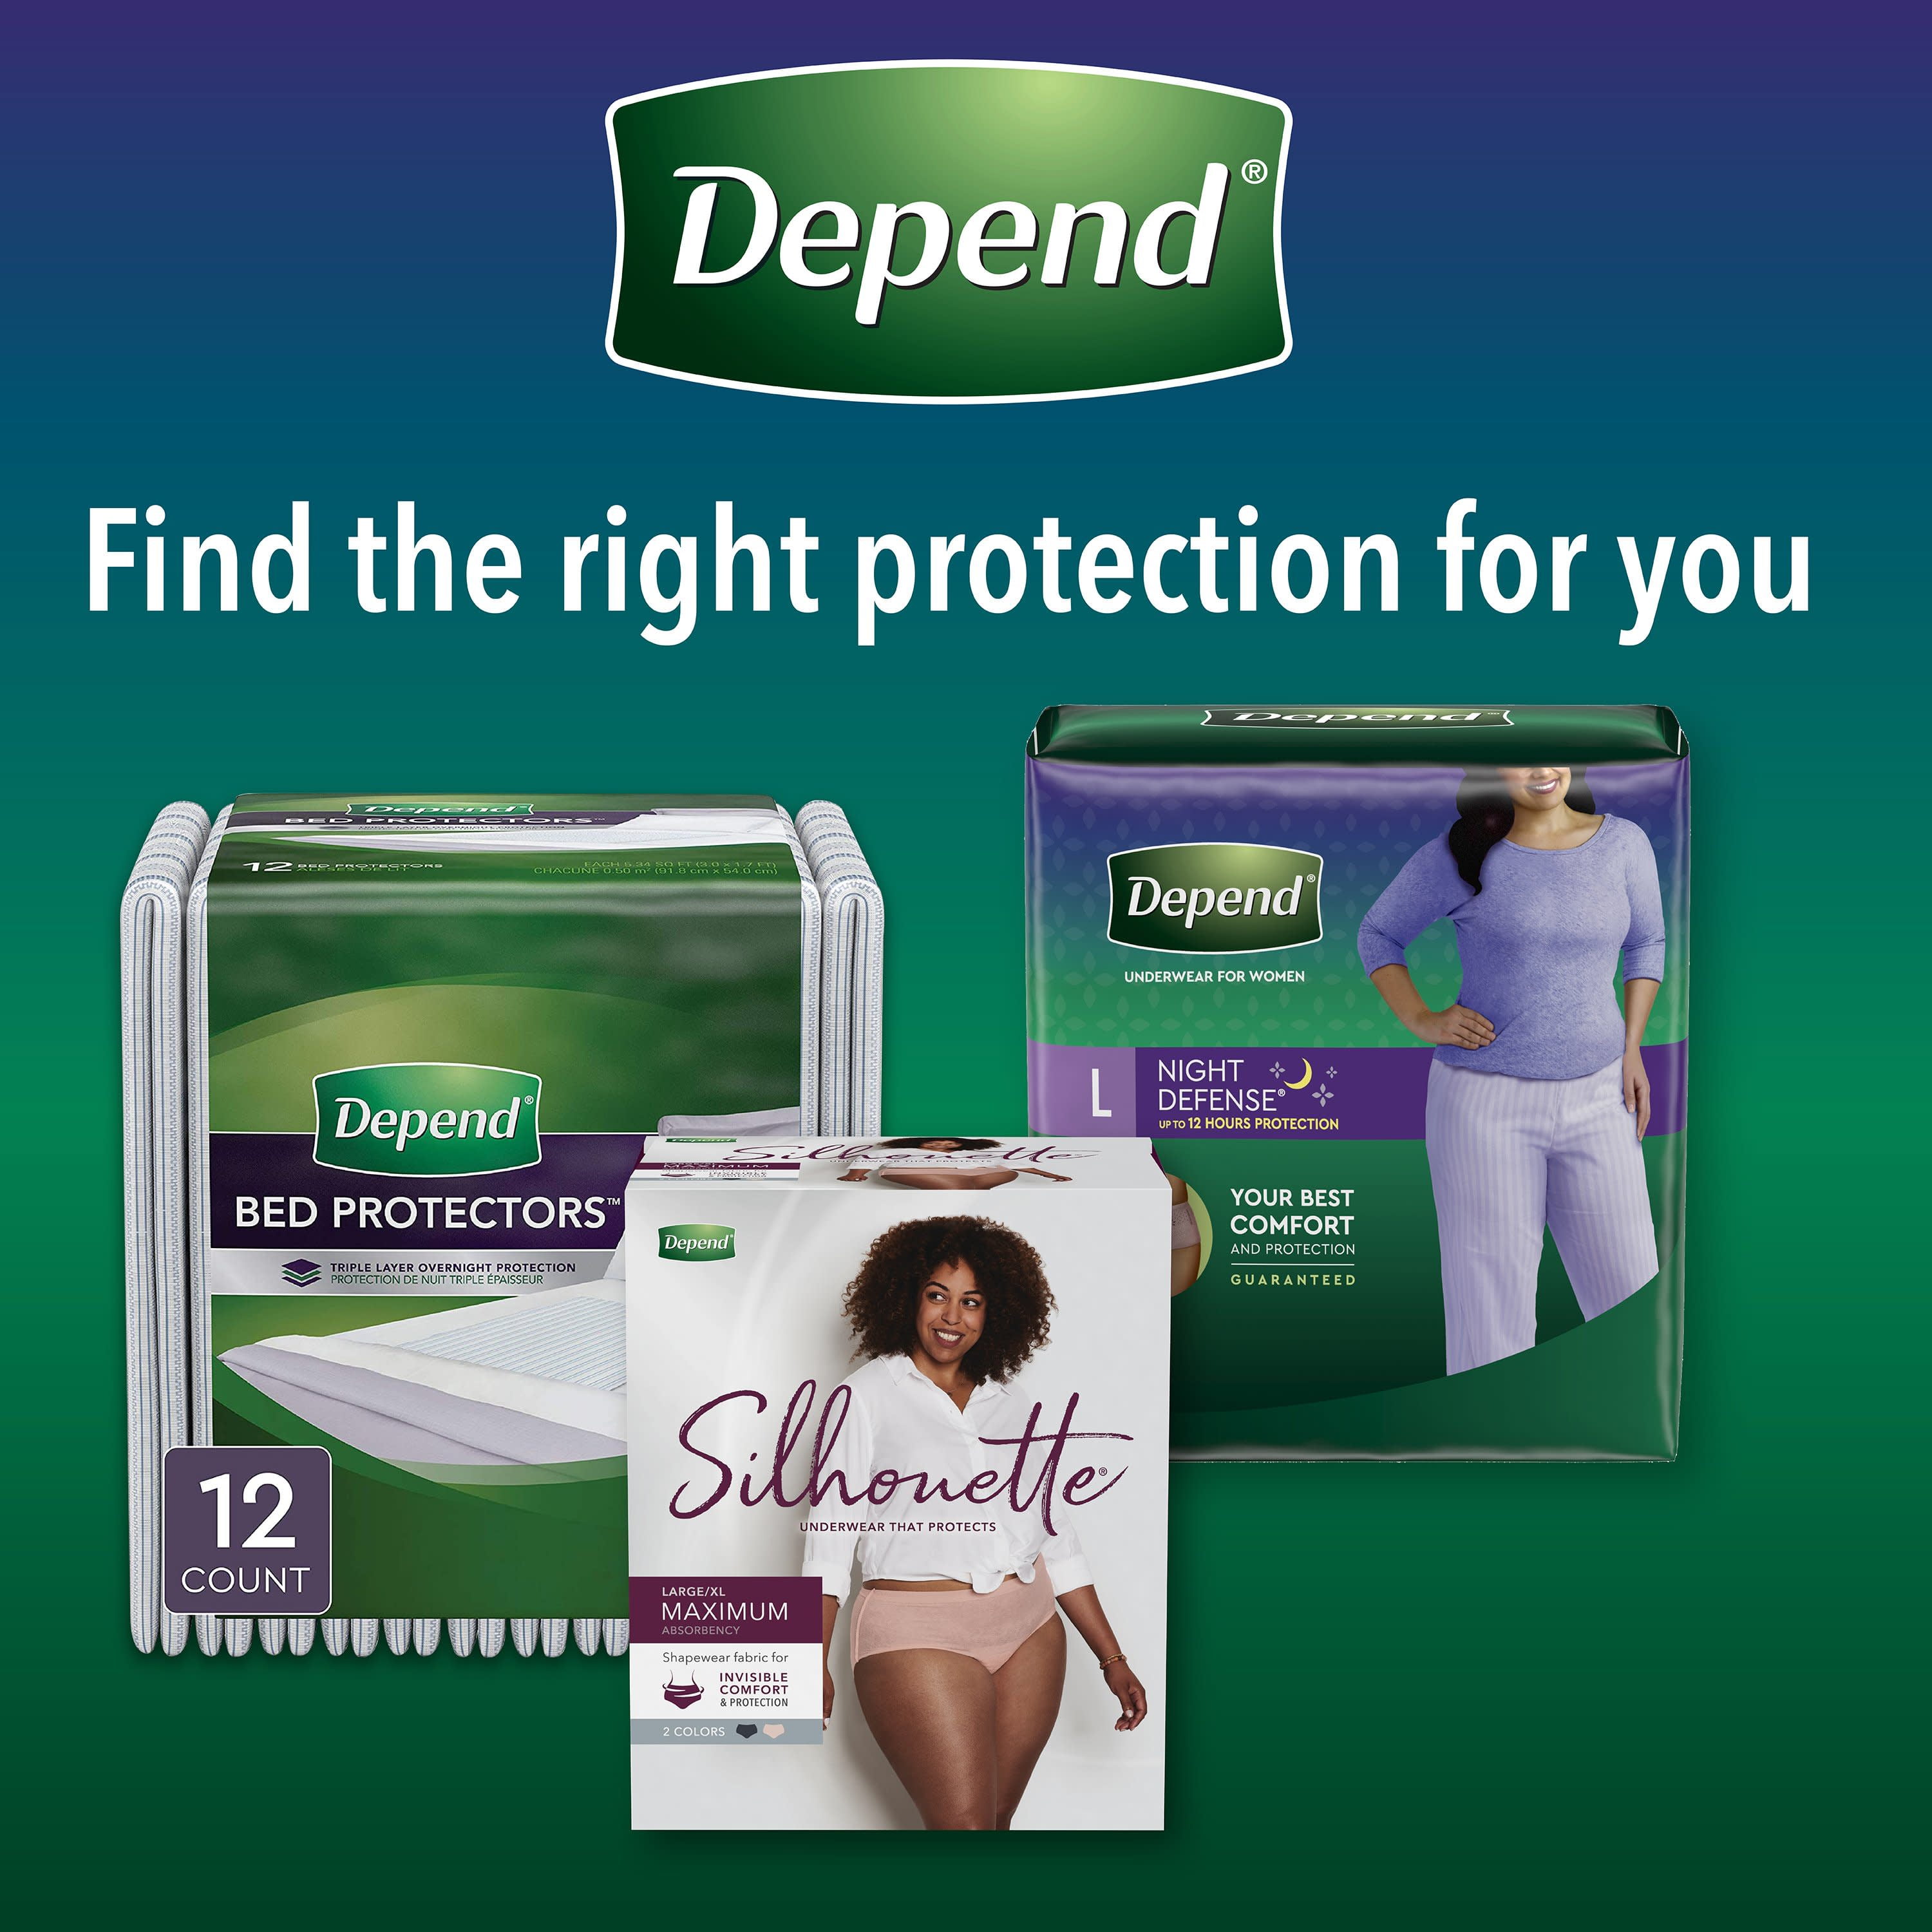 Depend - Night Defense Underwear Women - Medium